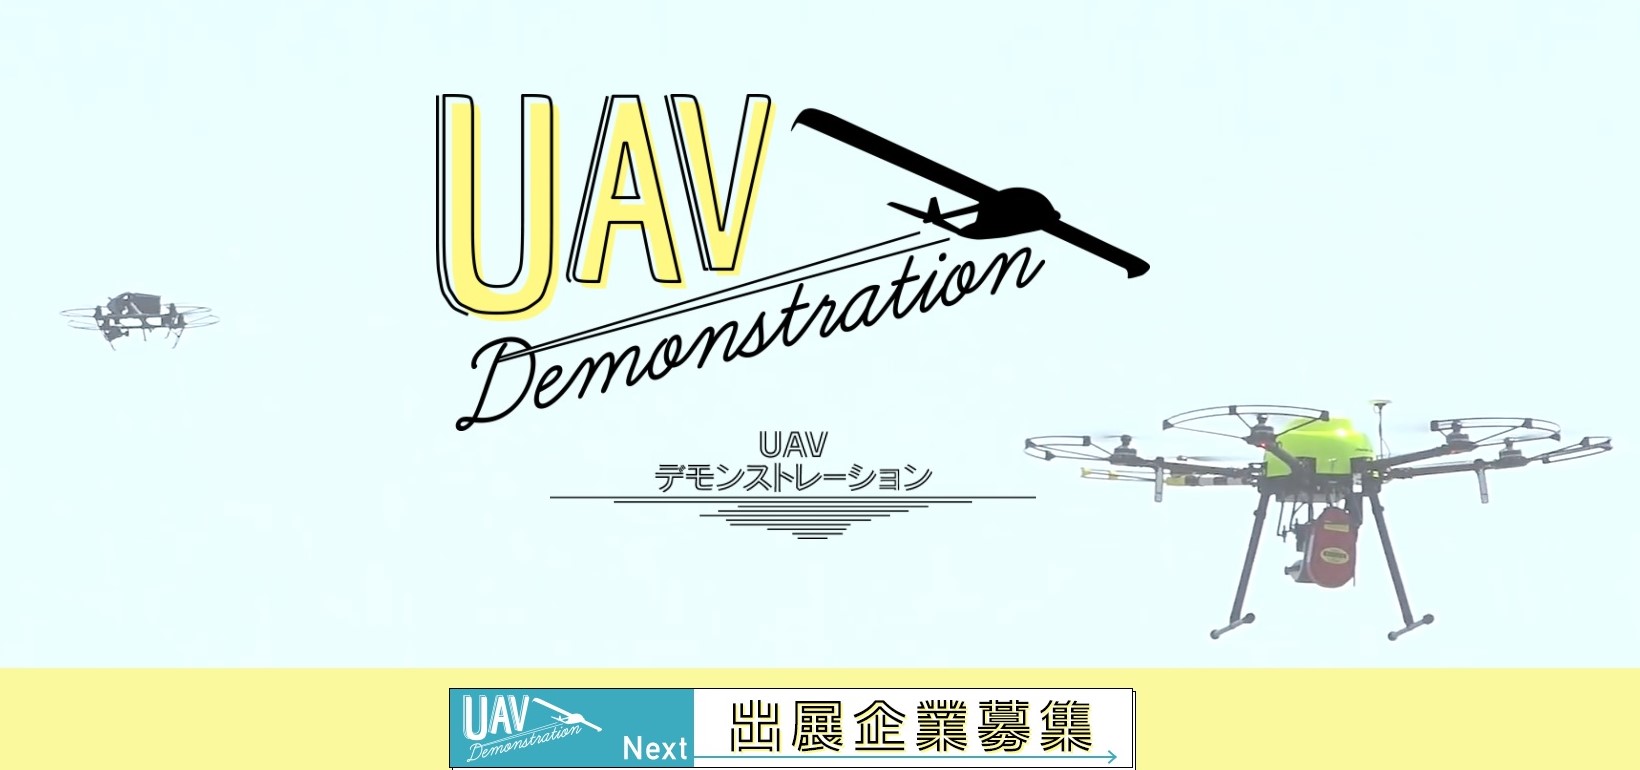 ドローンの航空ショー「UAVデモンストレーション」11月３日開催 出展は